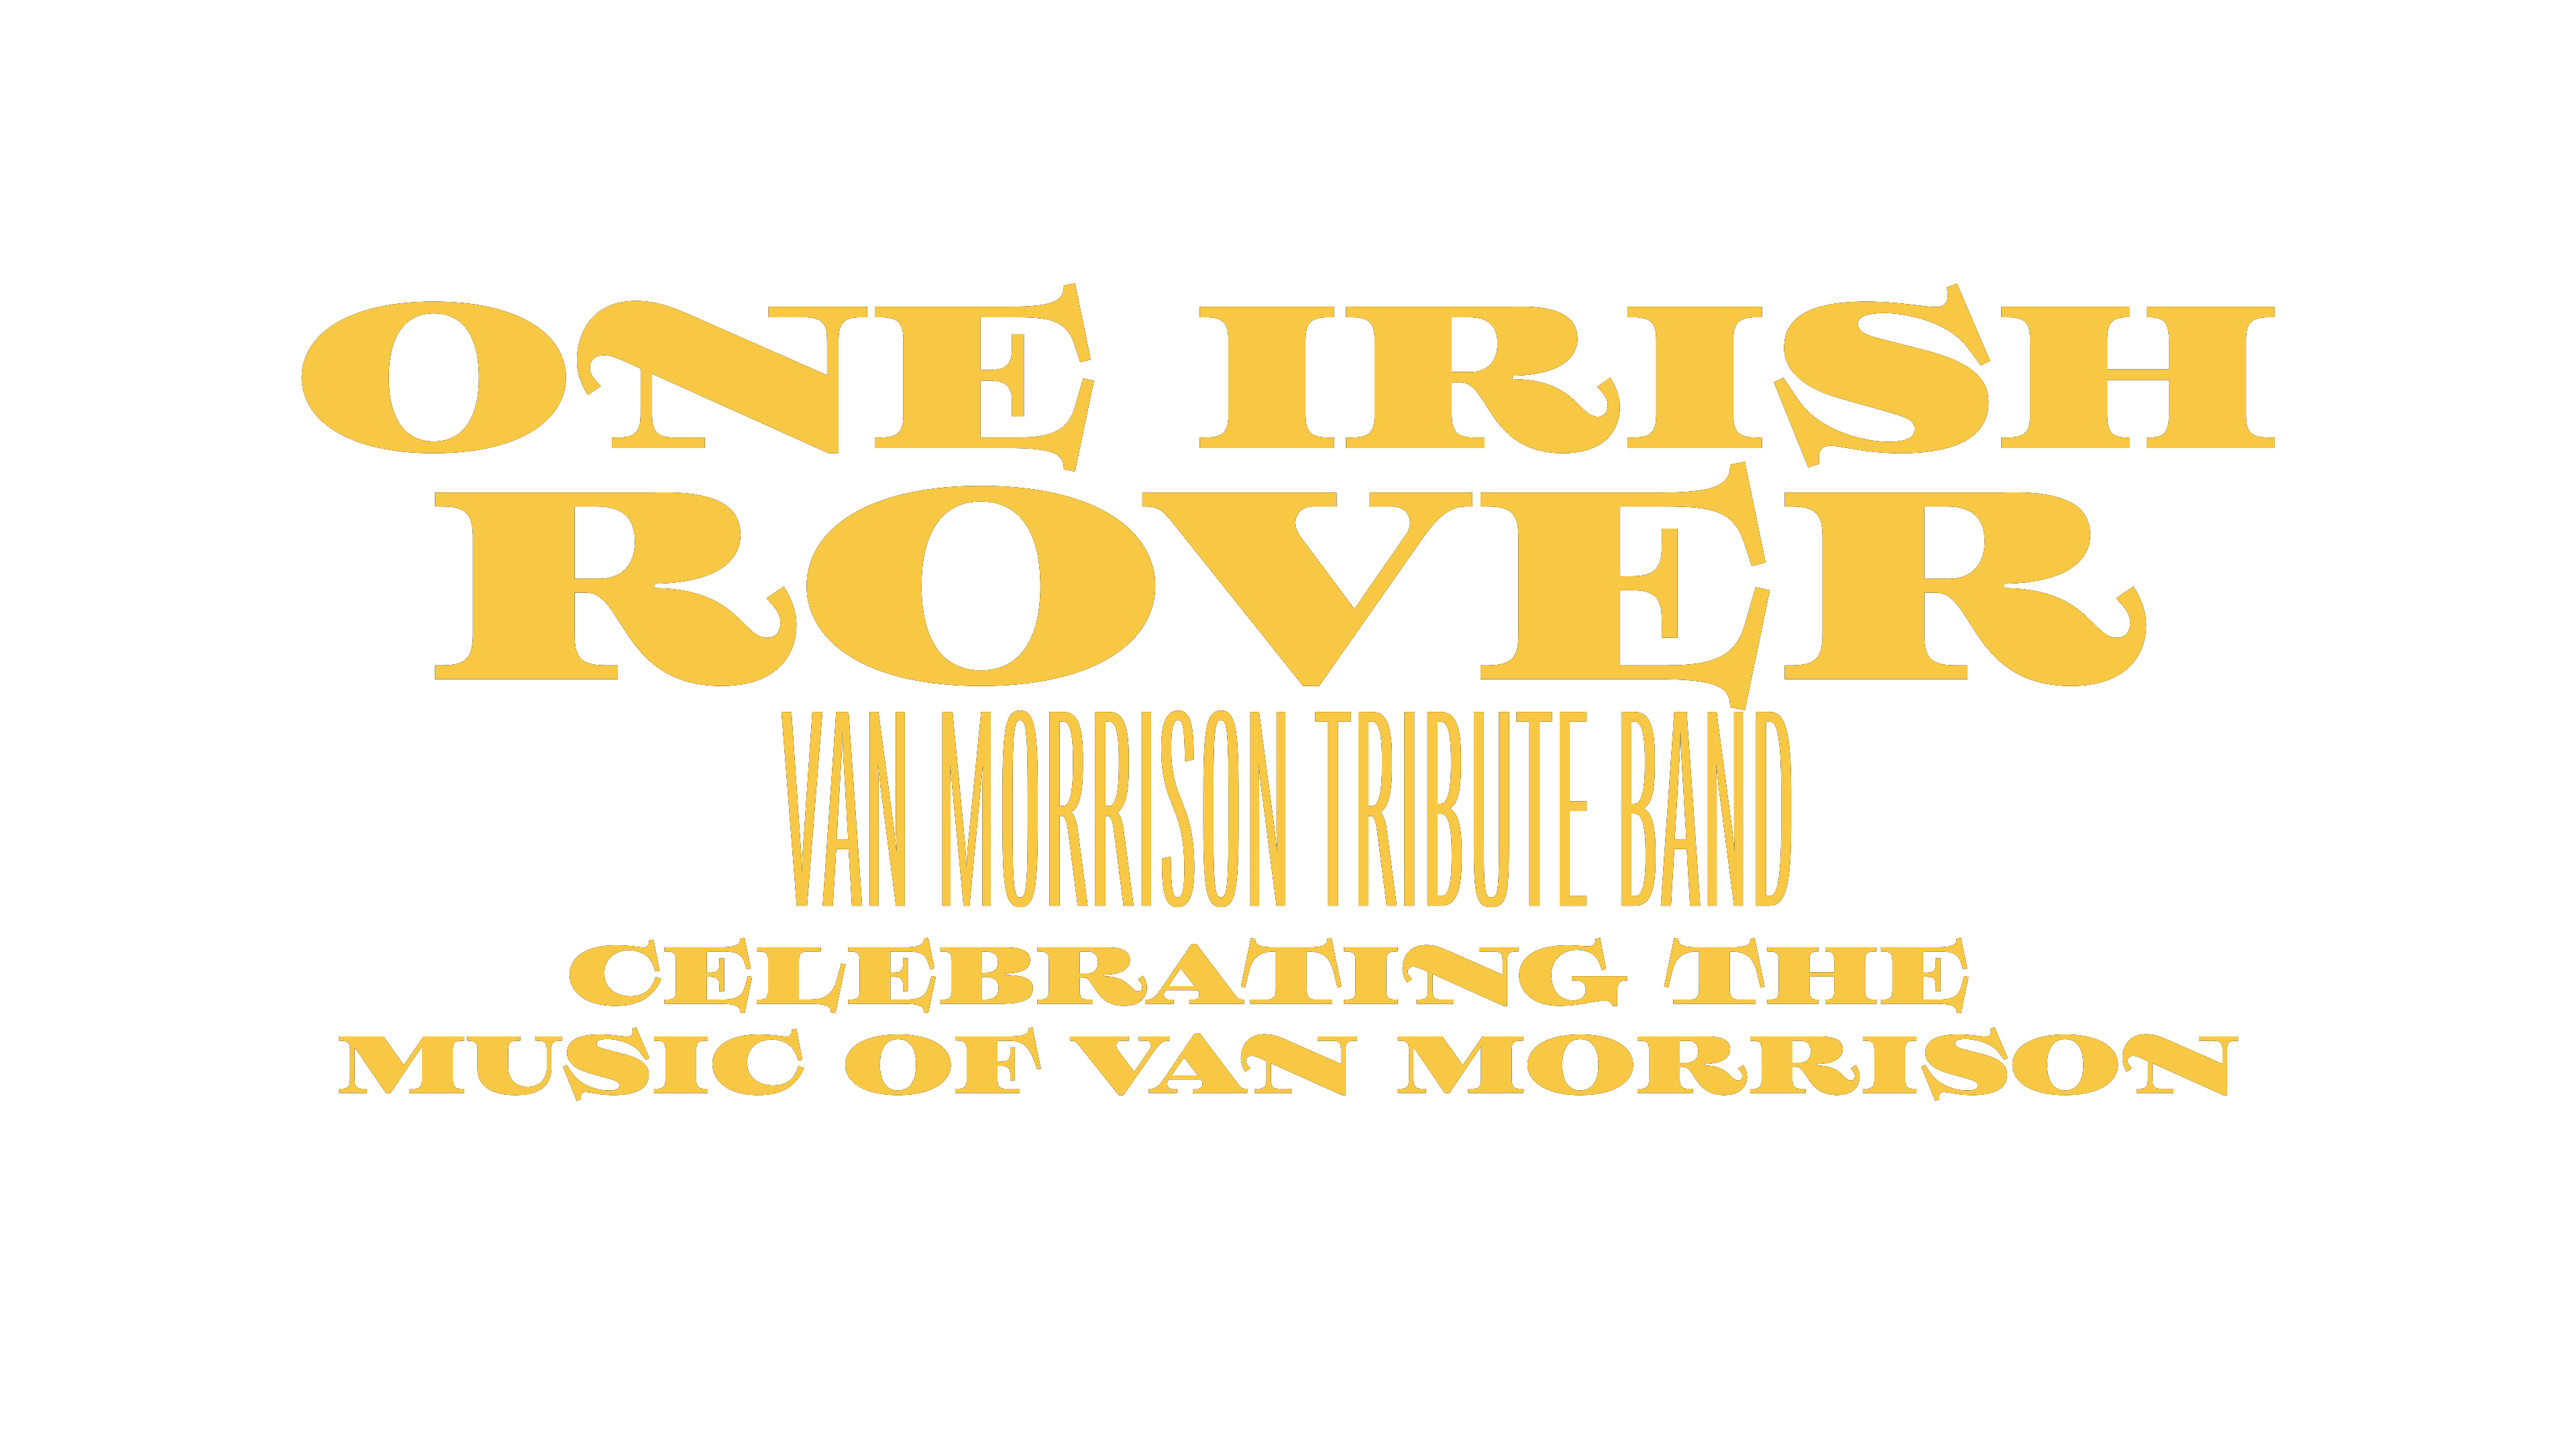 One Irish Rover Band Logo